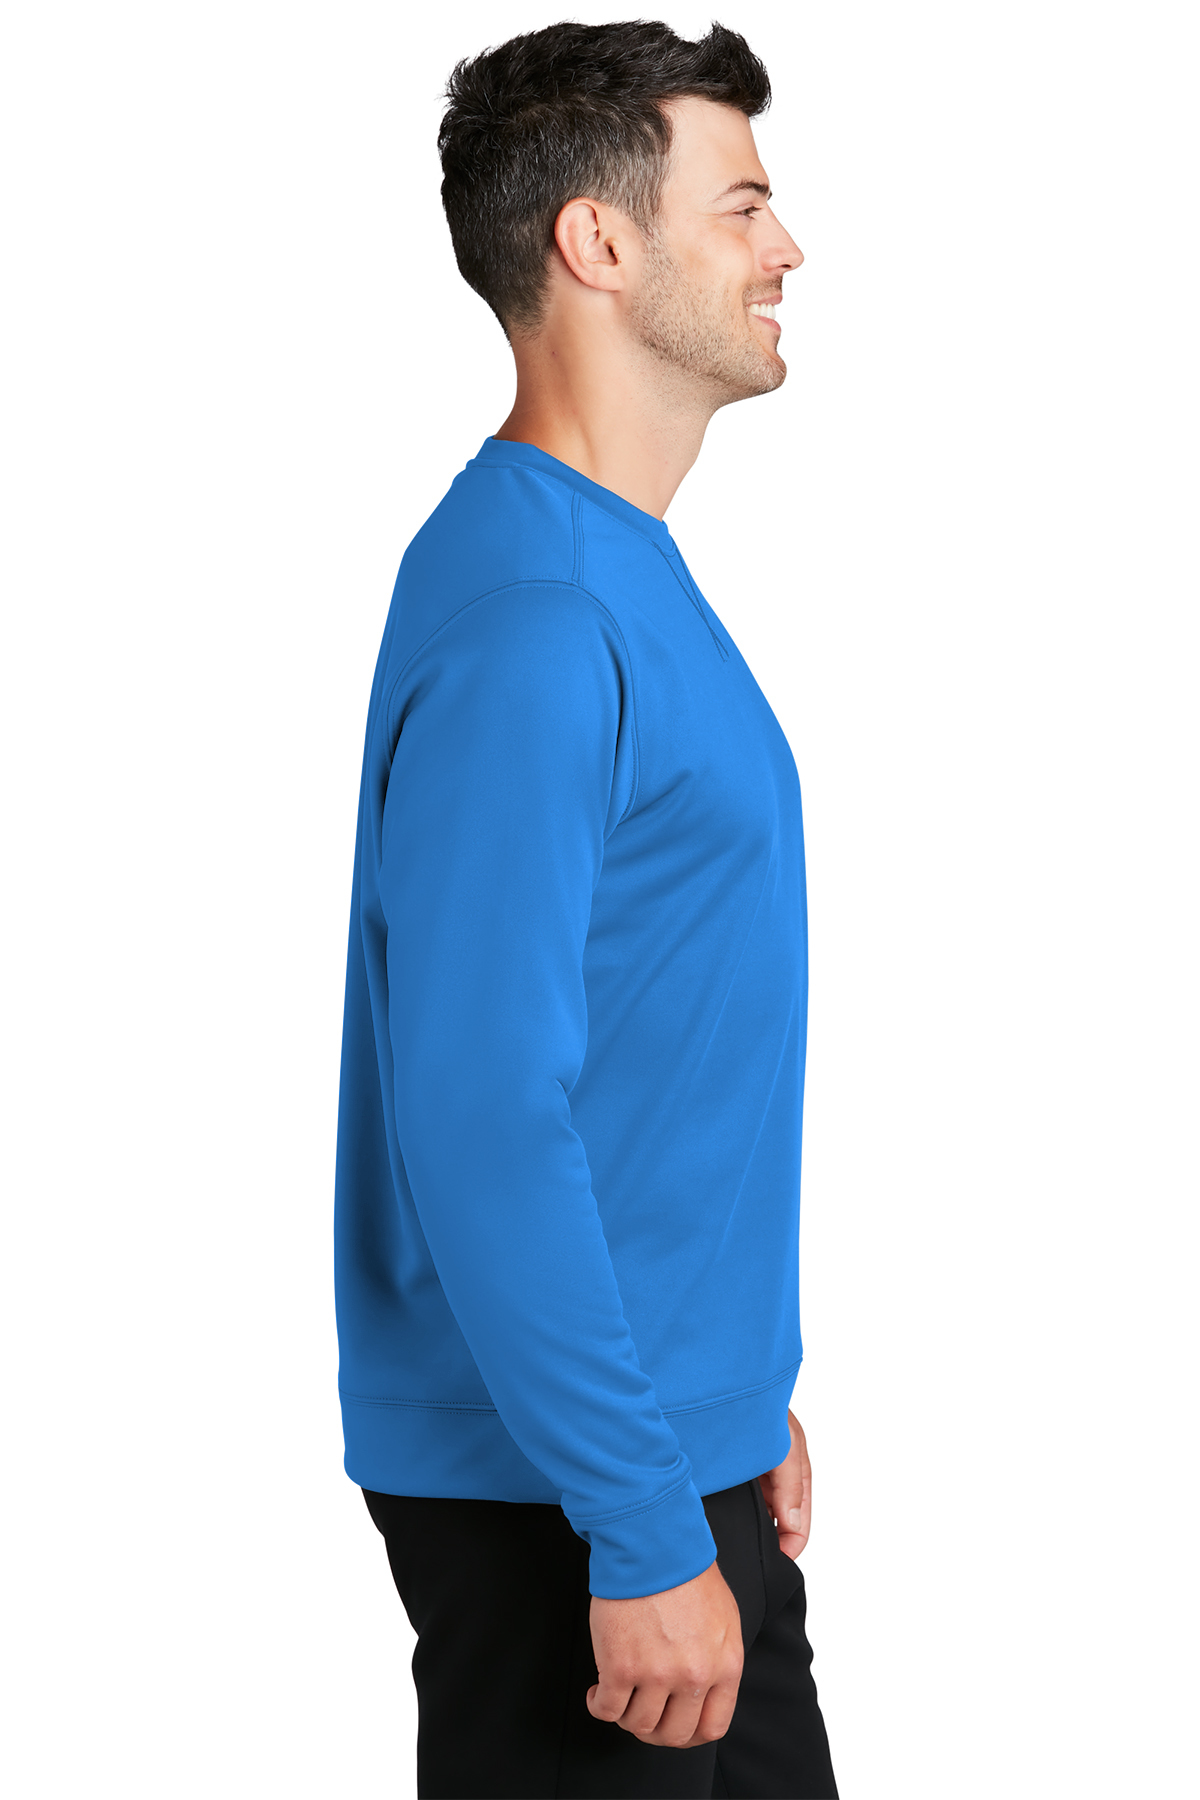 Port & Company ® Performance Fleece Crewneck Sweatshirt | Product | SanMar